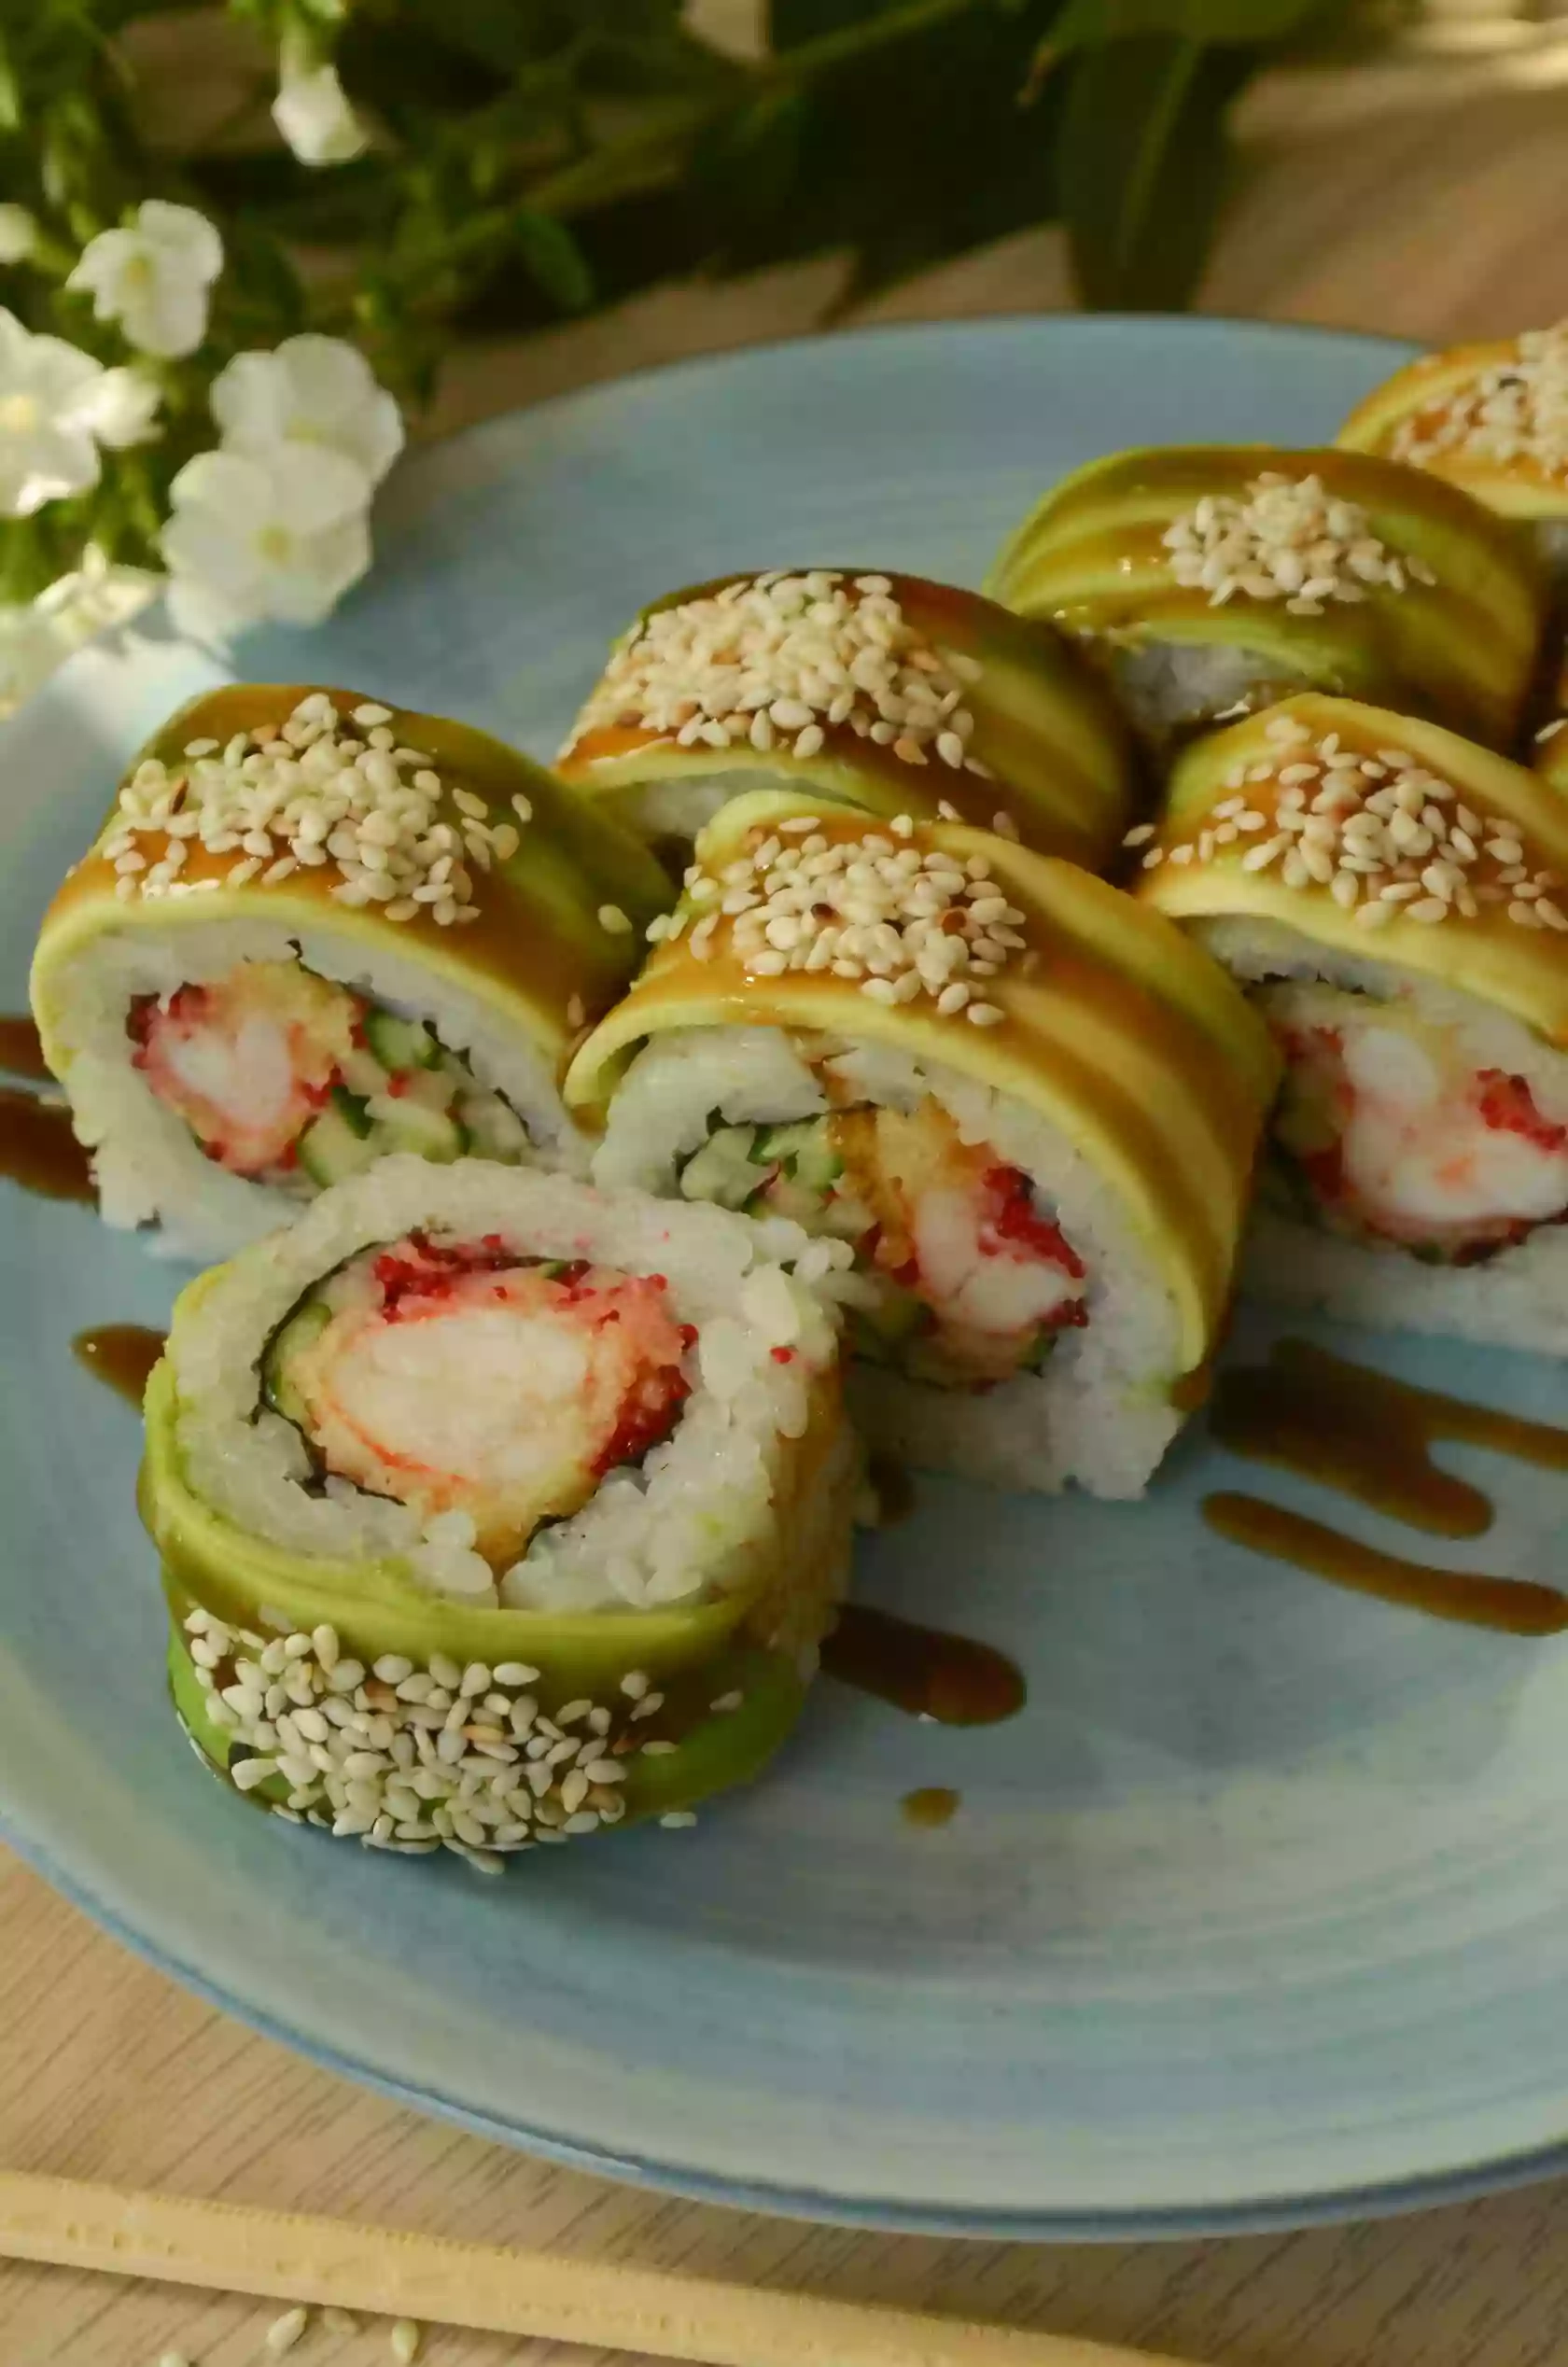 Kunsey sushi